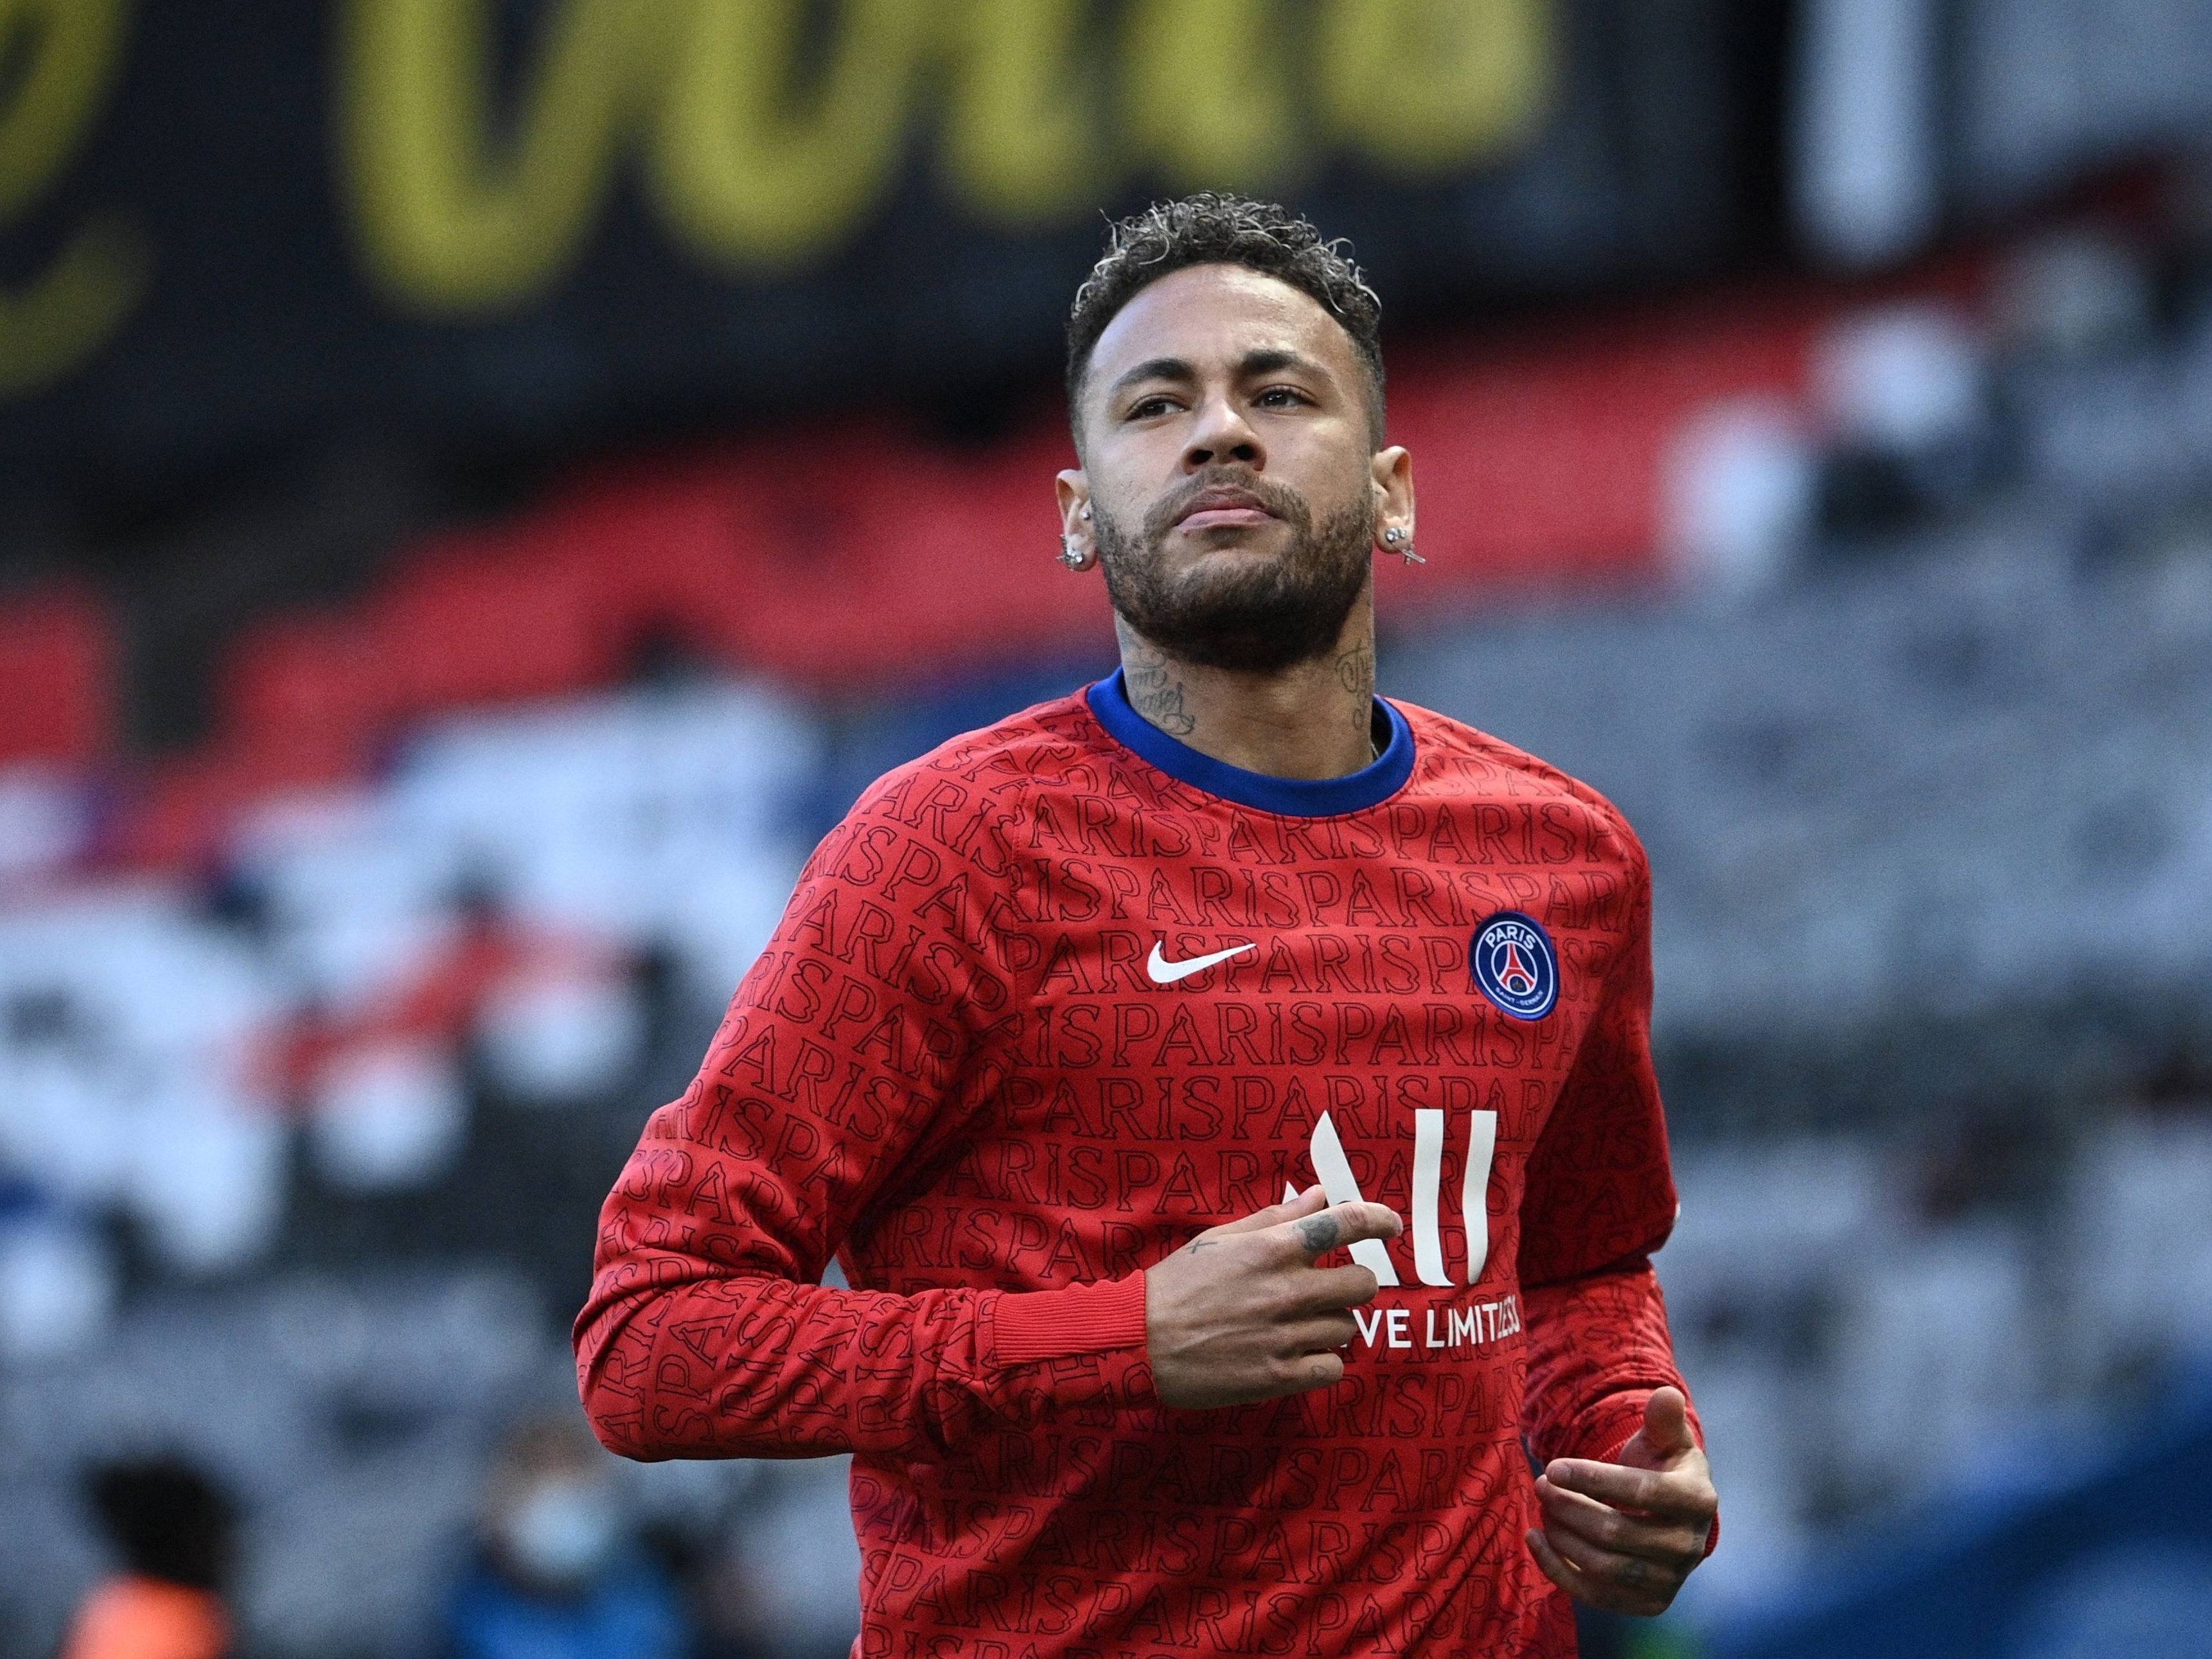 Neymar banca permanência: 'Não foi meu último jogo no Santos' - ESPN